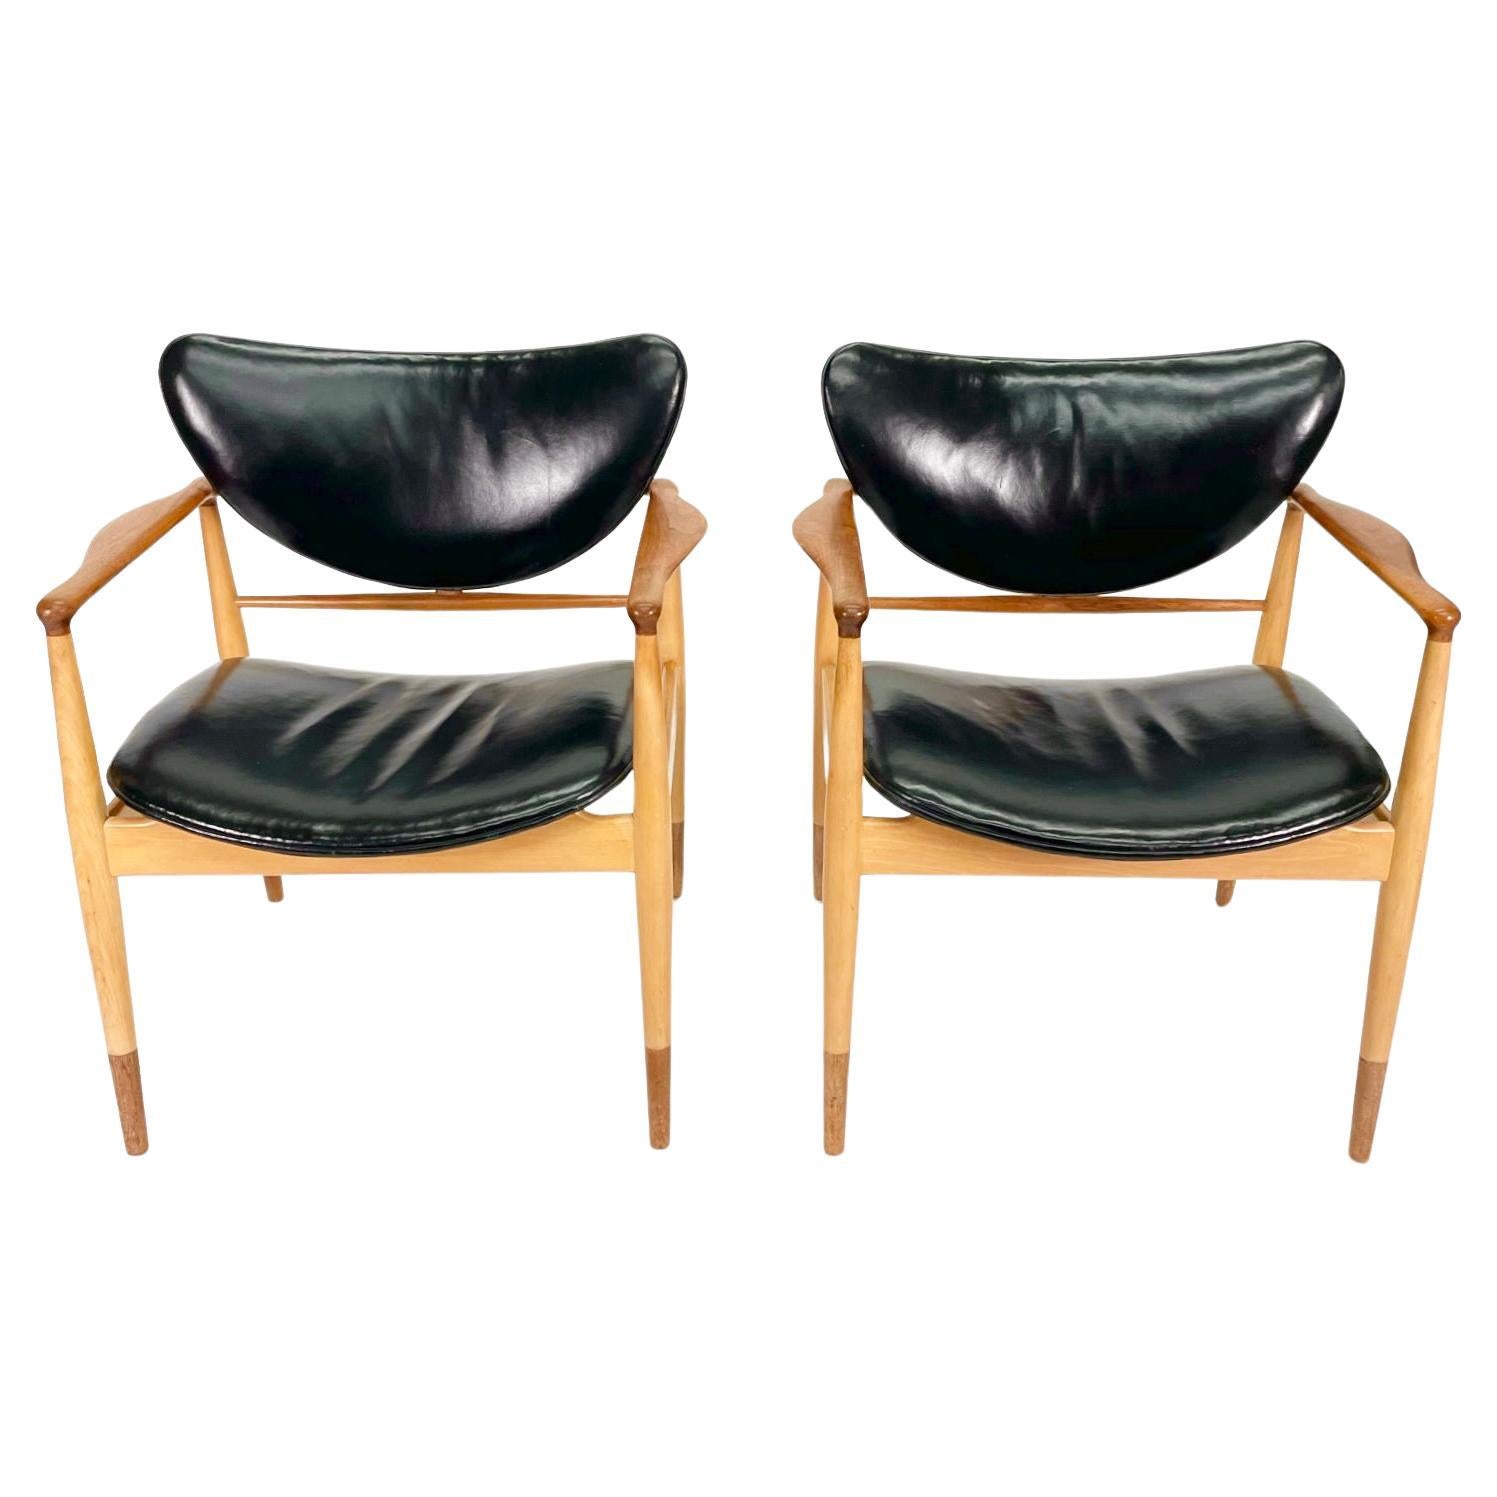 *En cours de restauration

Cet ensemble de 2 chaises Finn Juhl Model 48 par Baker présente des cadres en teck et érable massif dans deux tons qui sont magnifiquement sculptés et incroyablement confortables avec une assise et un dossier incurvés tout